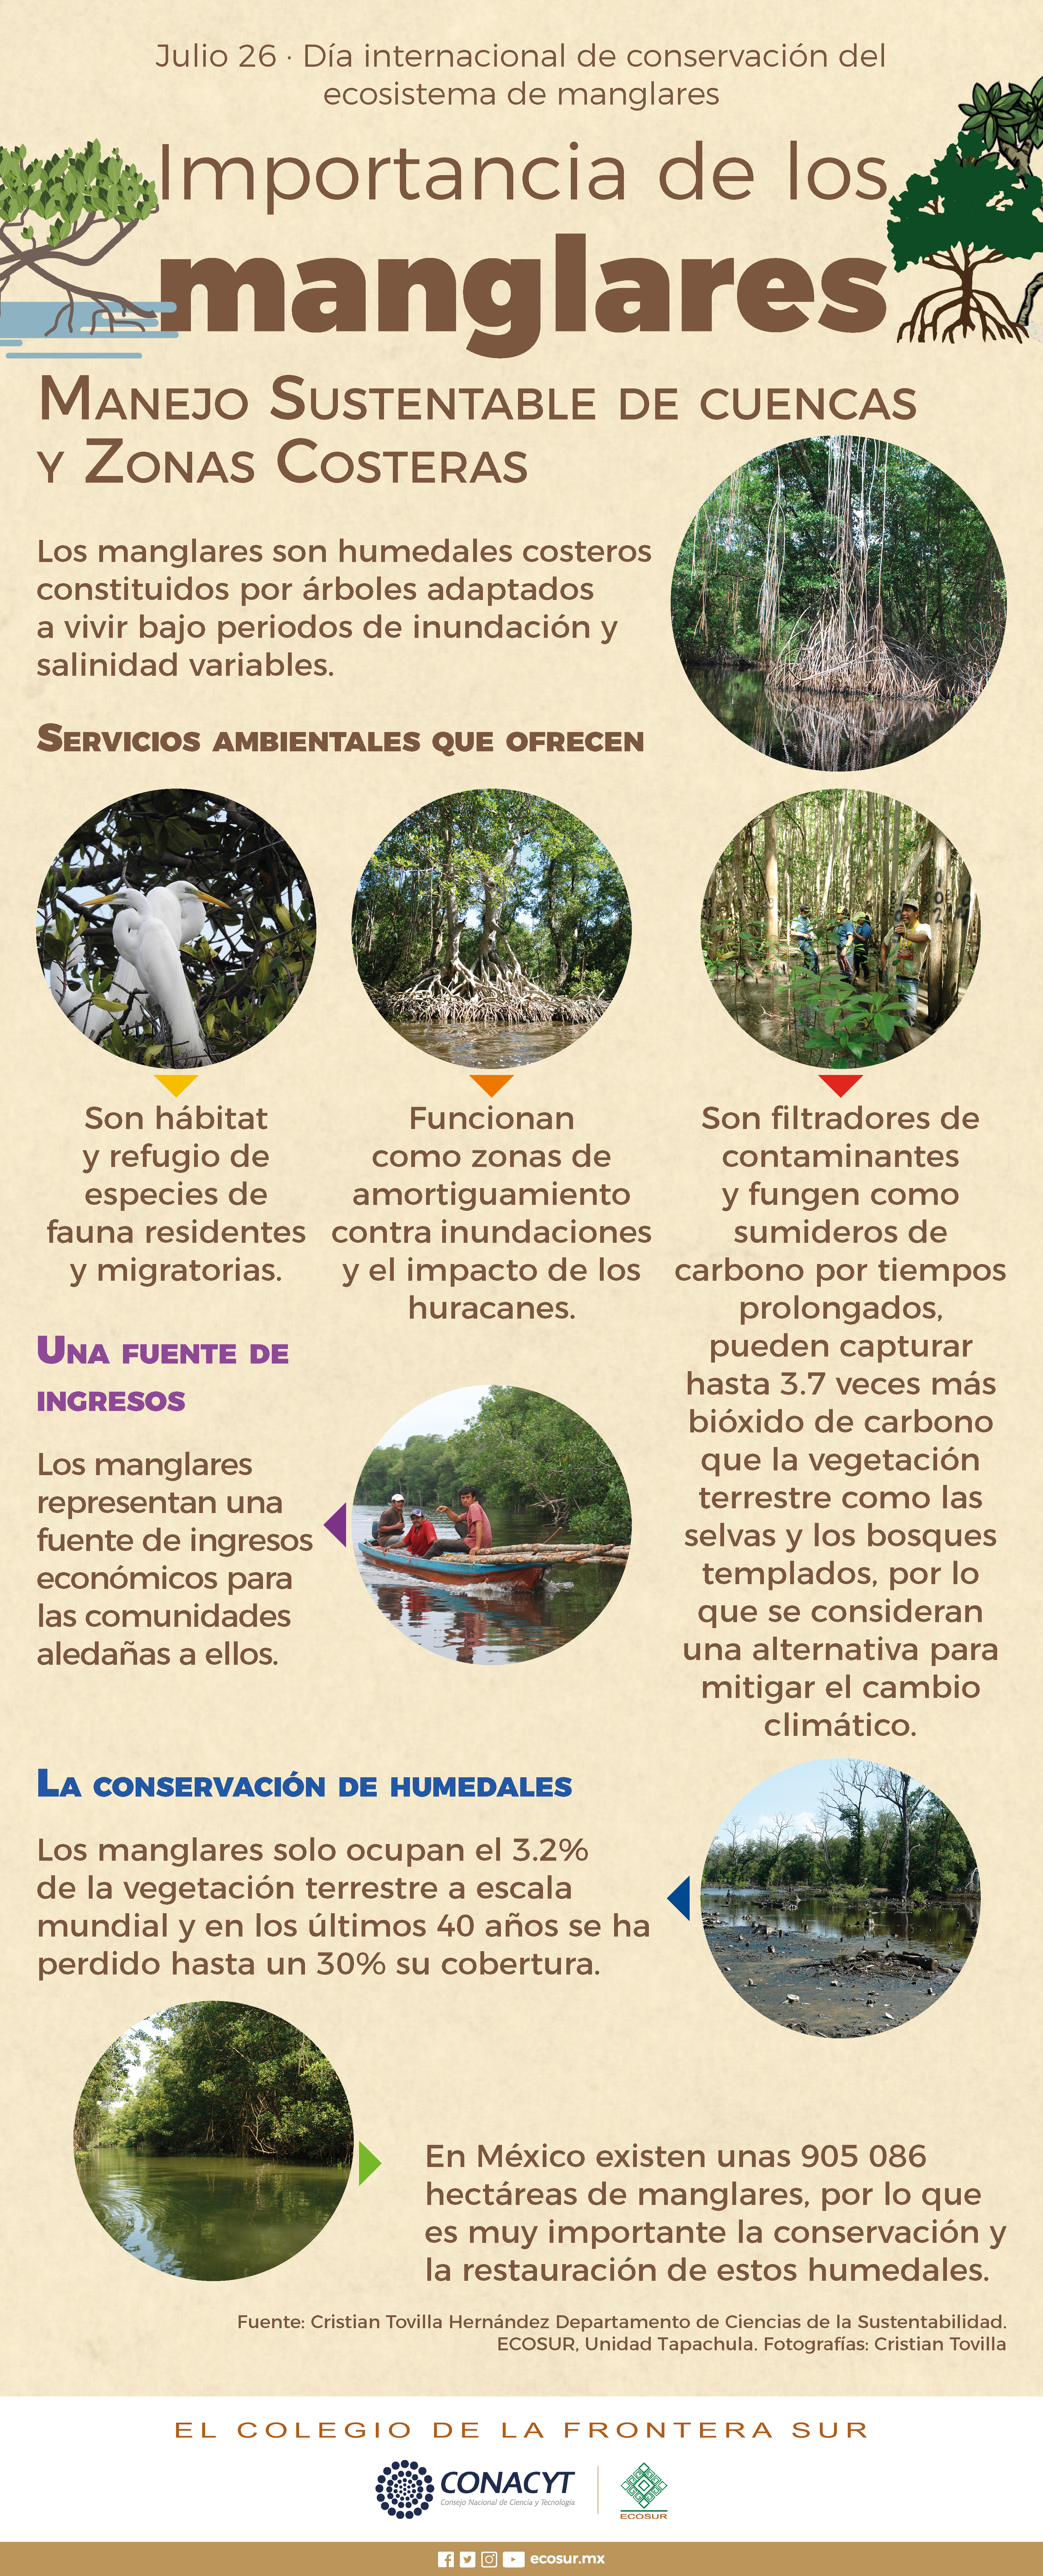 Julio 26 día internacional de conservación, del ecosistema de manglares